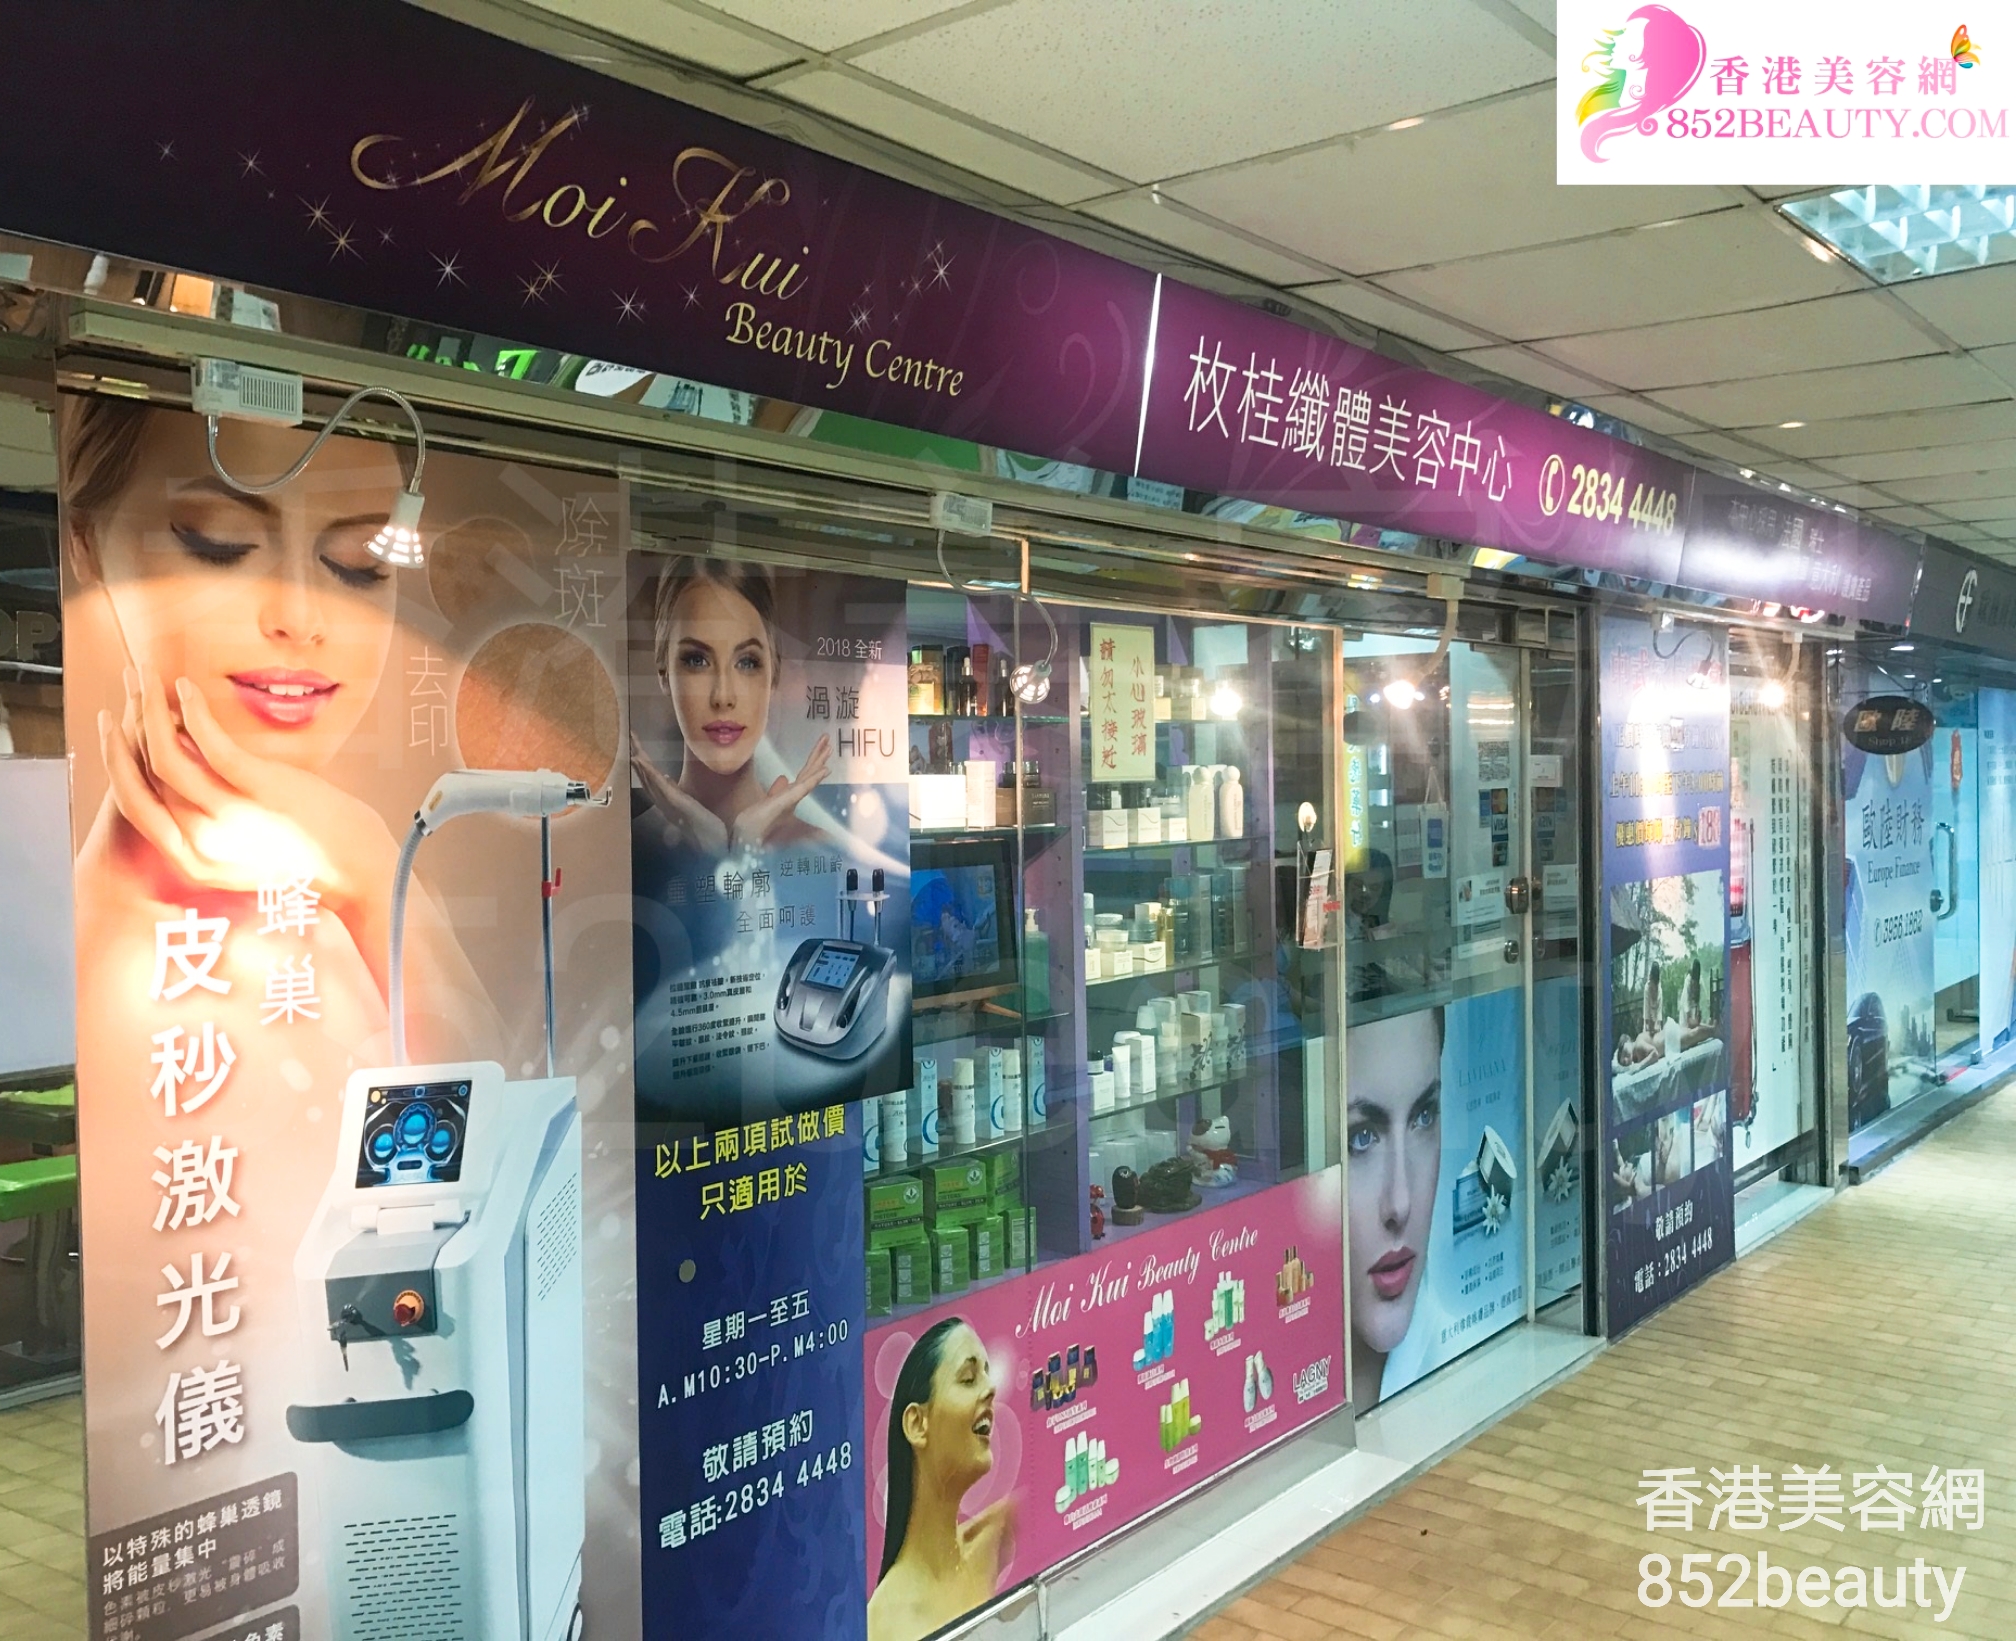 Eye Care: 枚桂纖體美容中心 Moi Kui Beauty Centre